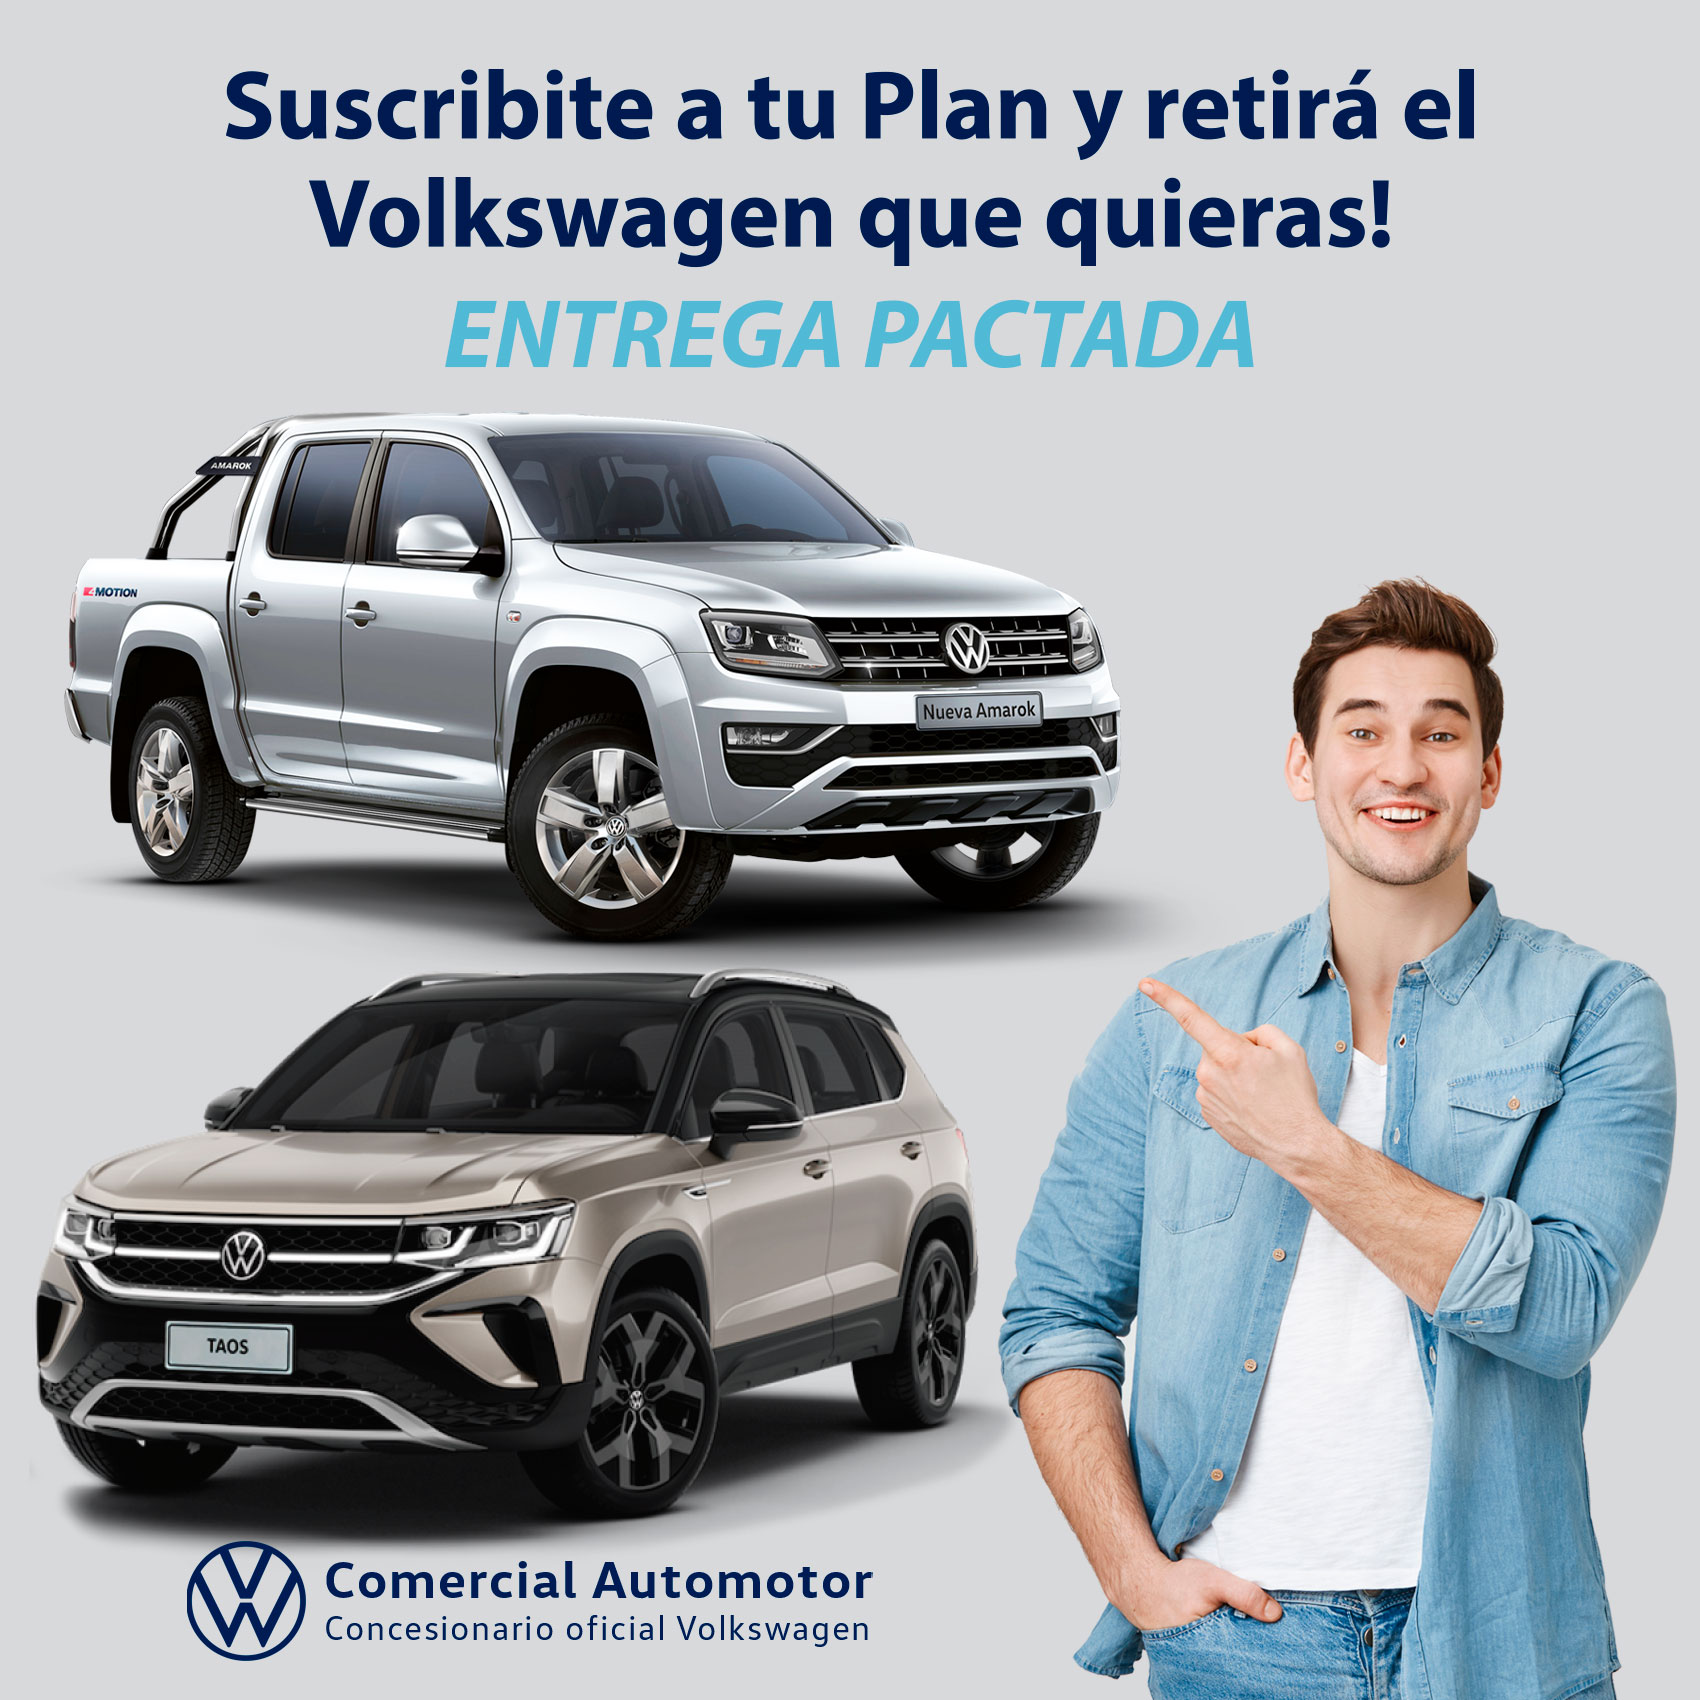 Suscribite a tu Plan y retira el
Volkswagen que quieras!

Comercial Automotor
Concesionario oficial Volkswagen